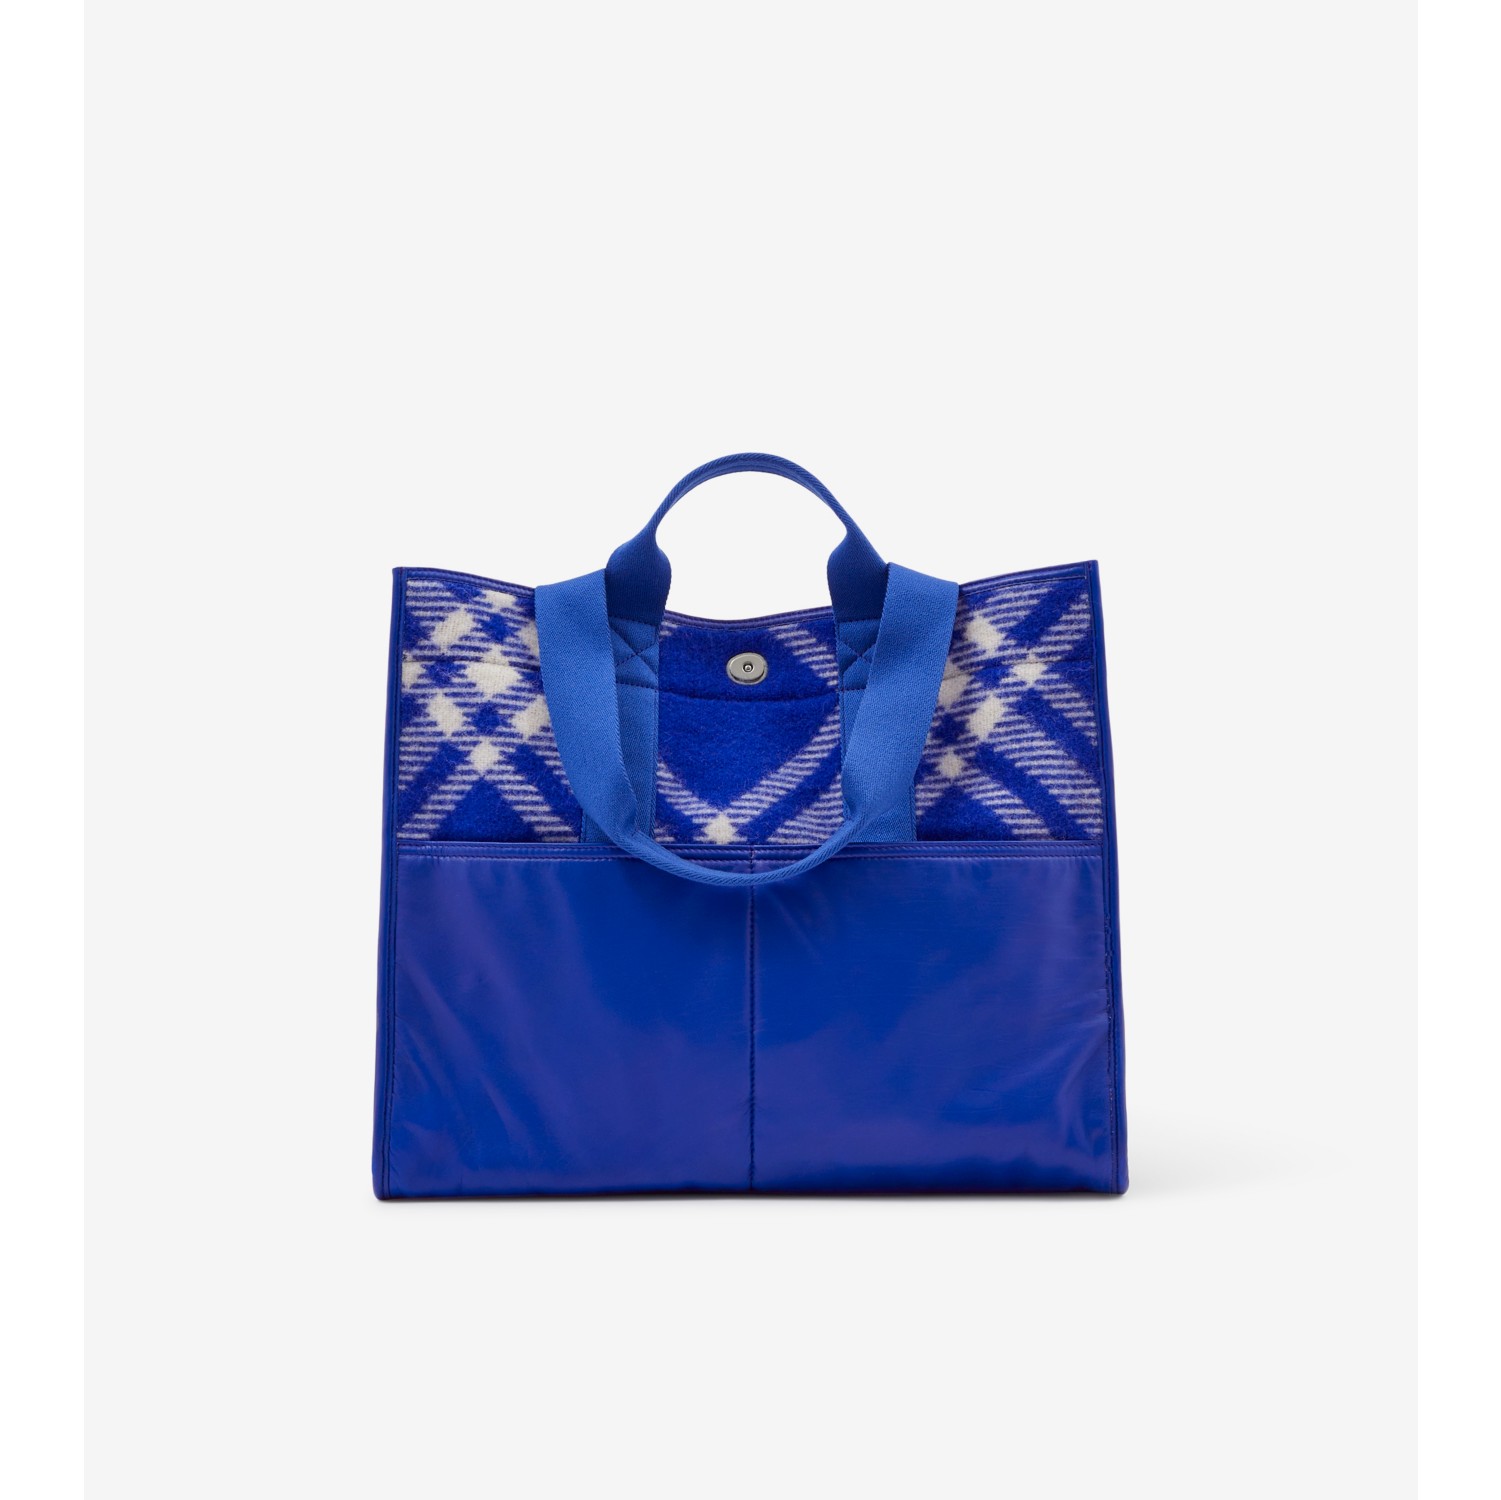 Goyard Bags for Men - Vestiaire Collective